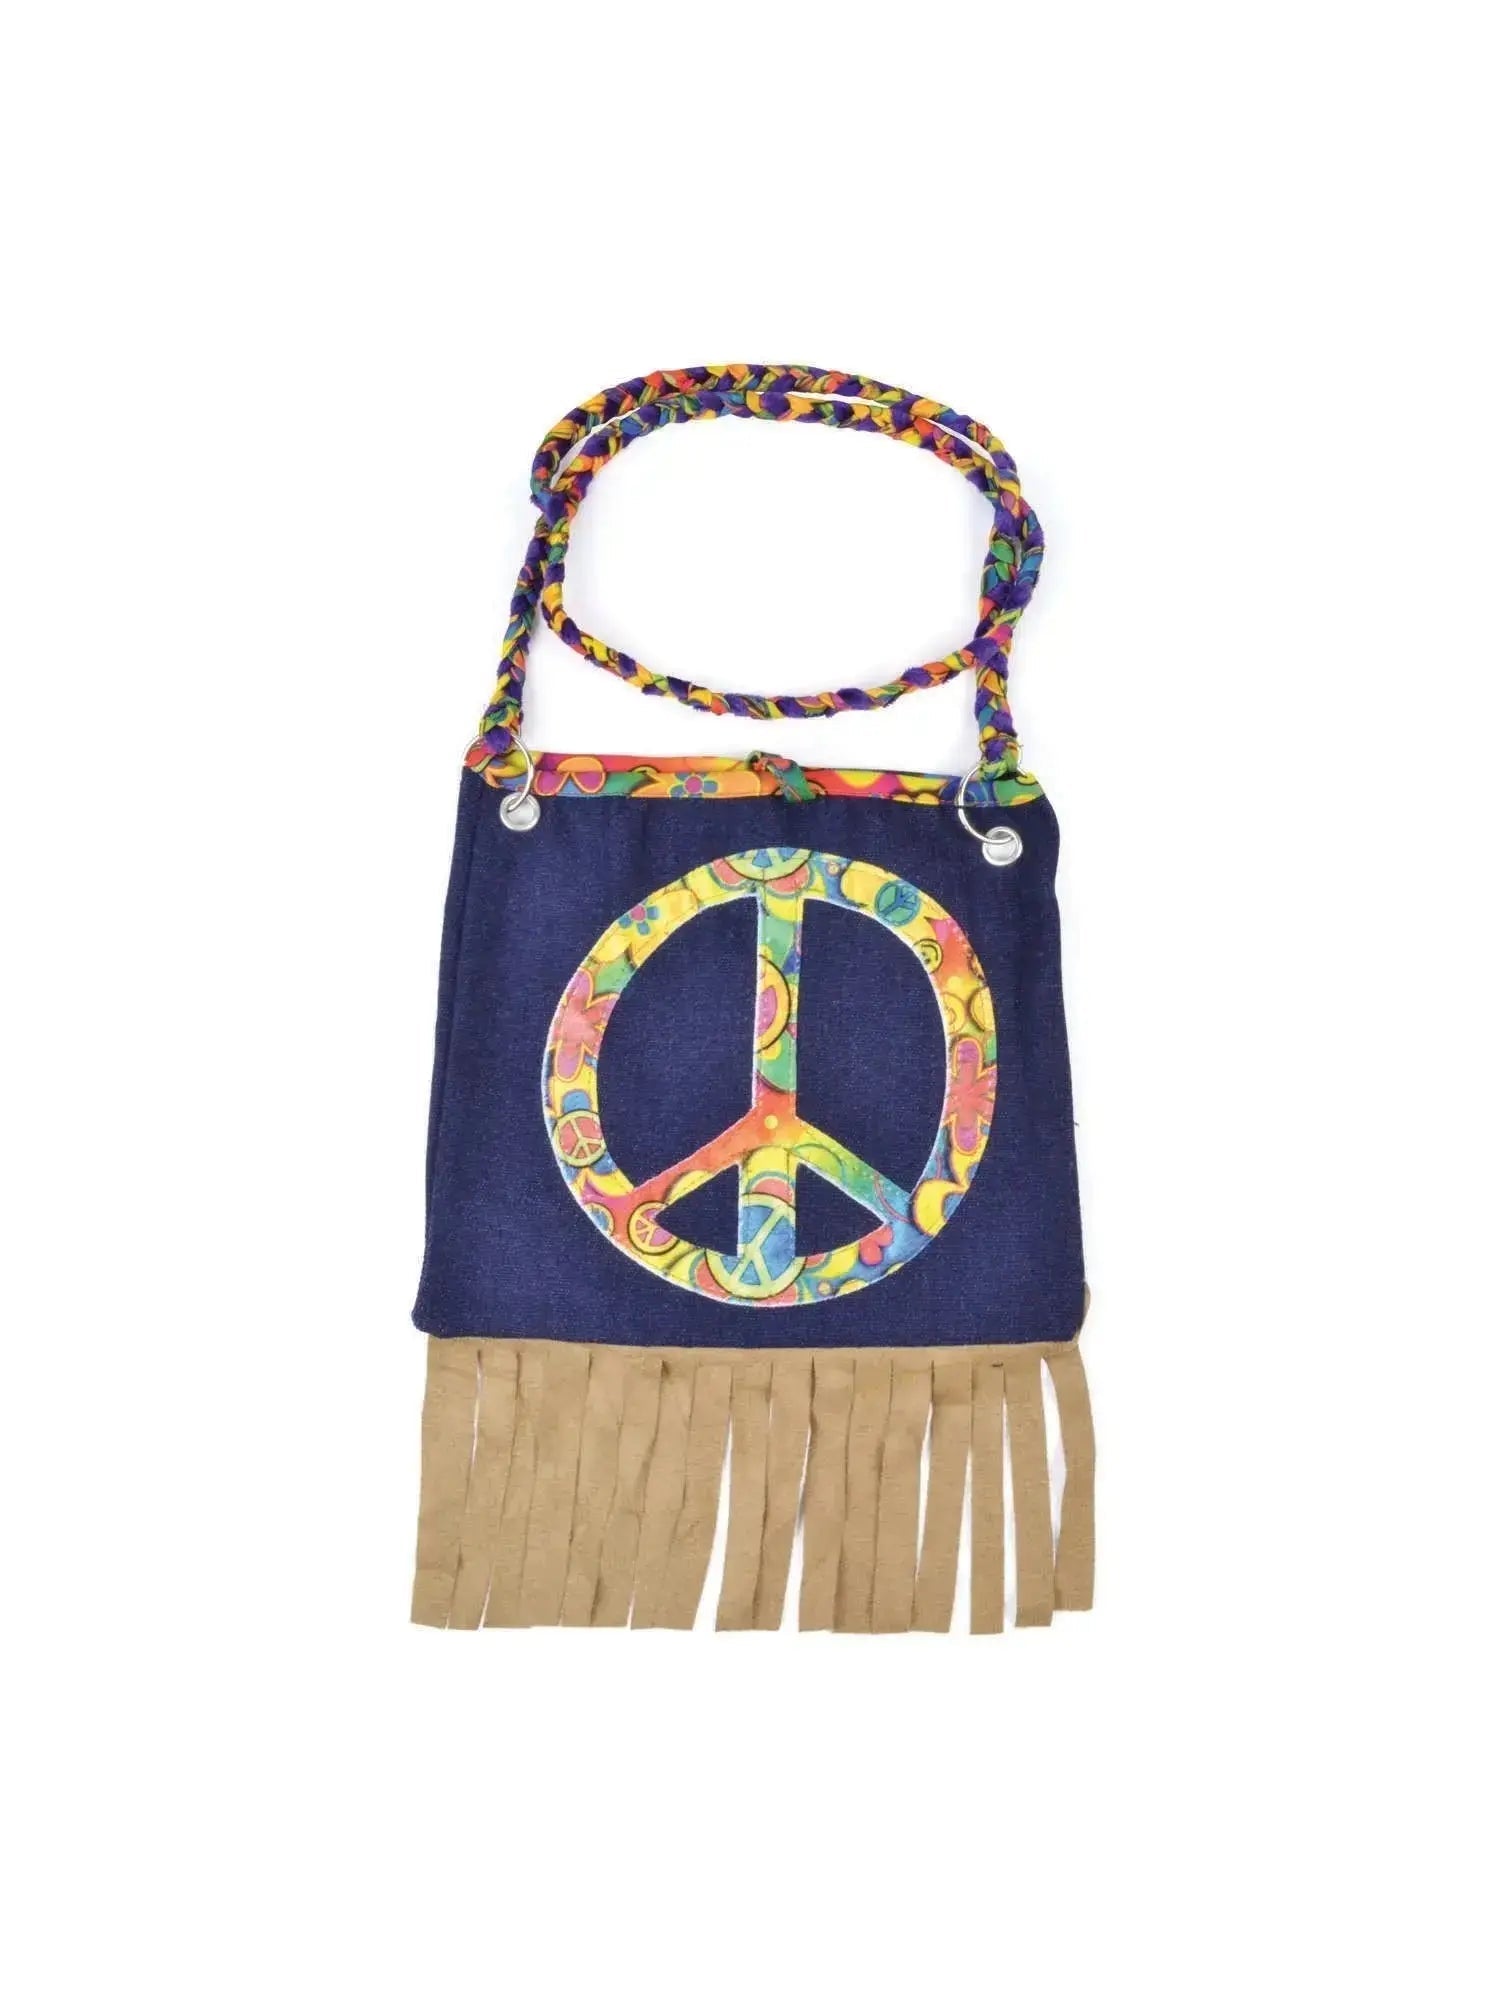 Hippy Handbag | The Party Hut